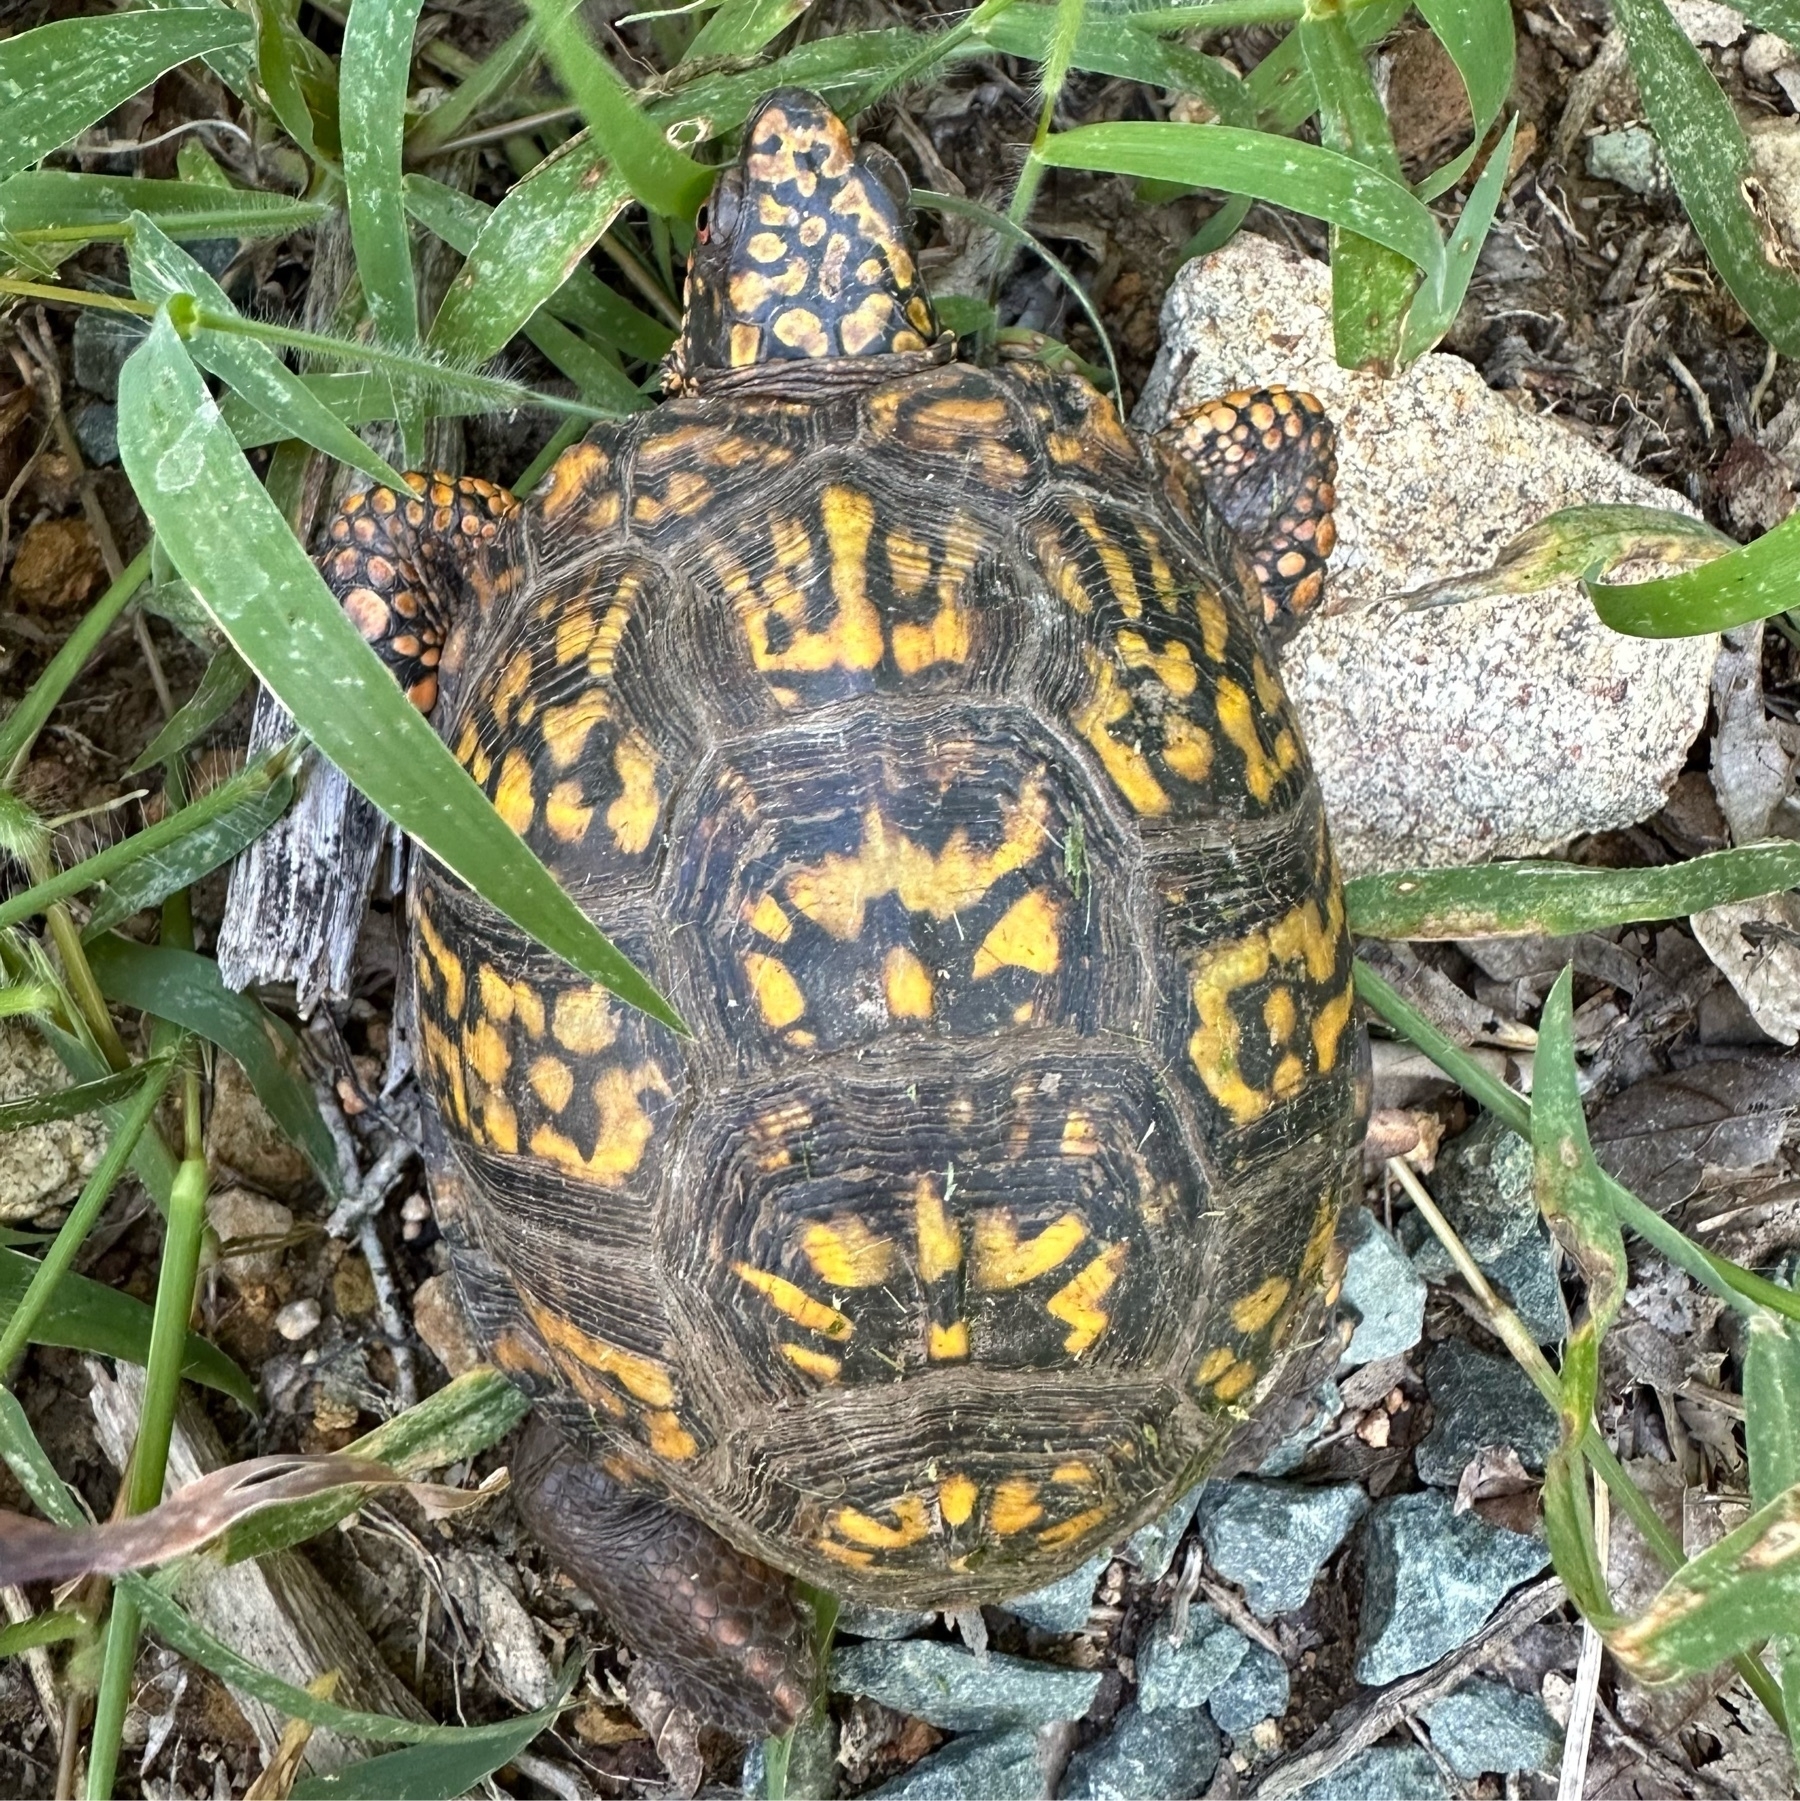 box turtle in grass